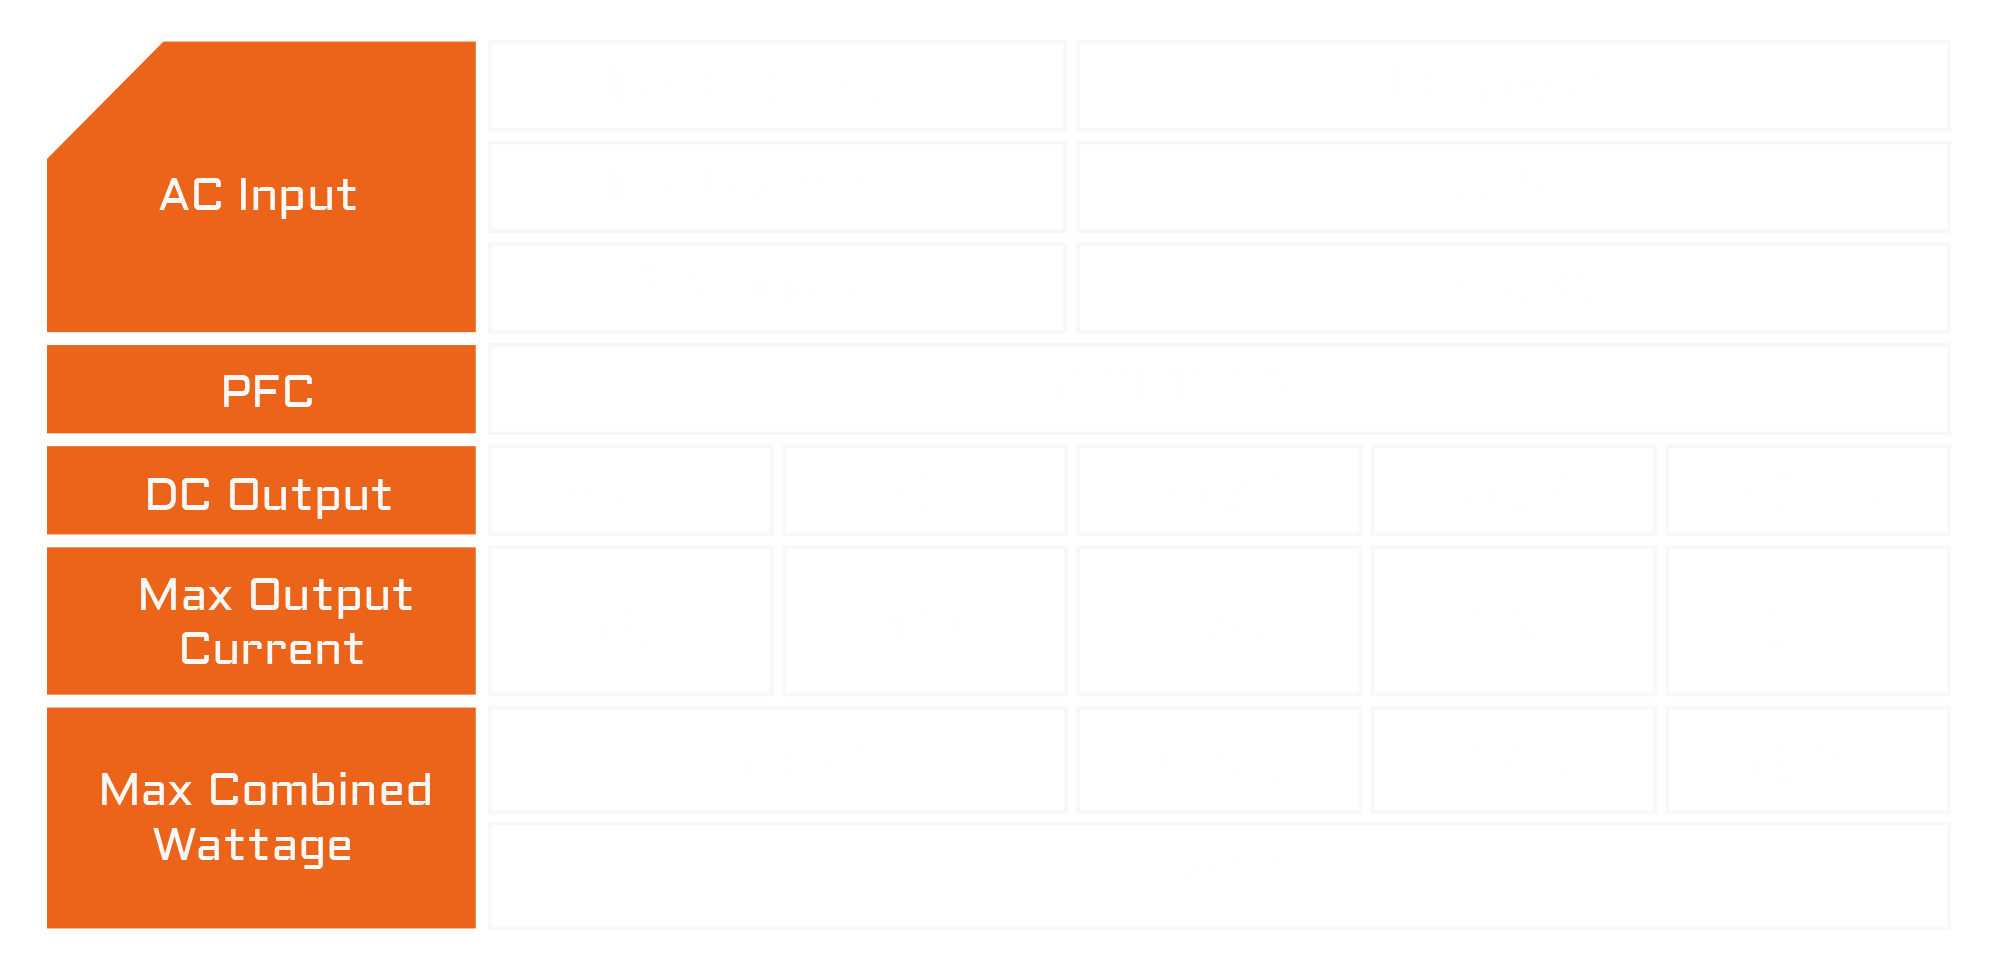 Cuadro con los valores de Voltaje y Corriente de Entrada y Salida de la Fuente Gigabyte P650B y de los conectores Internos